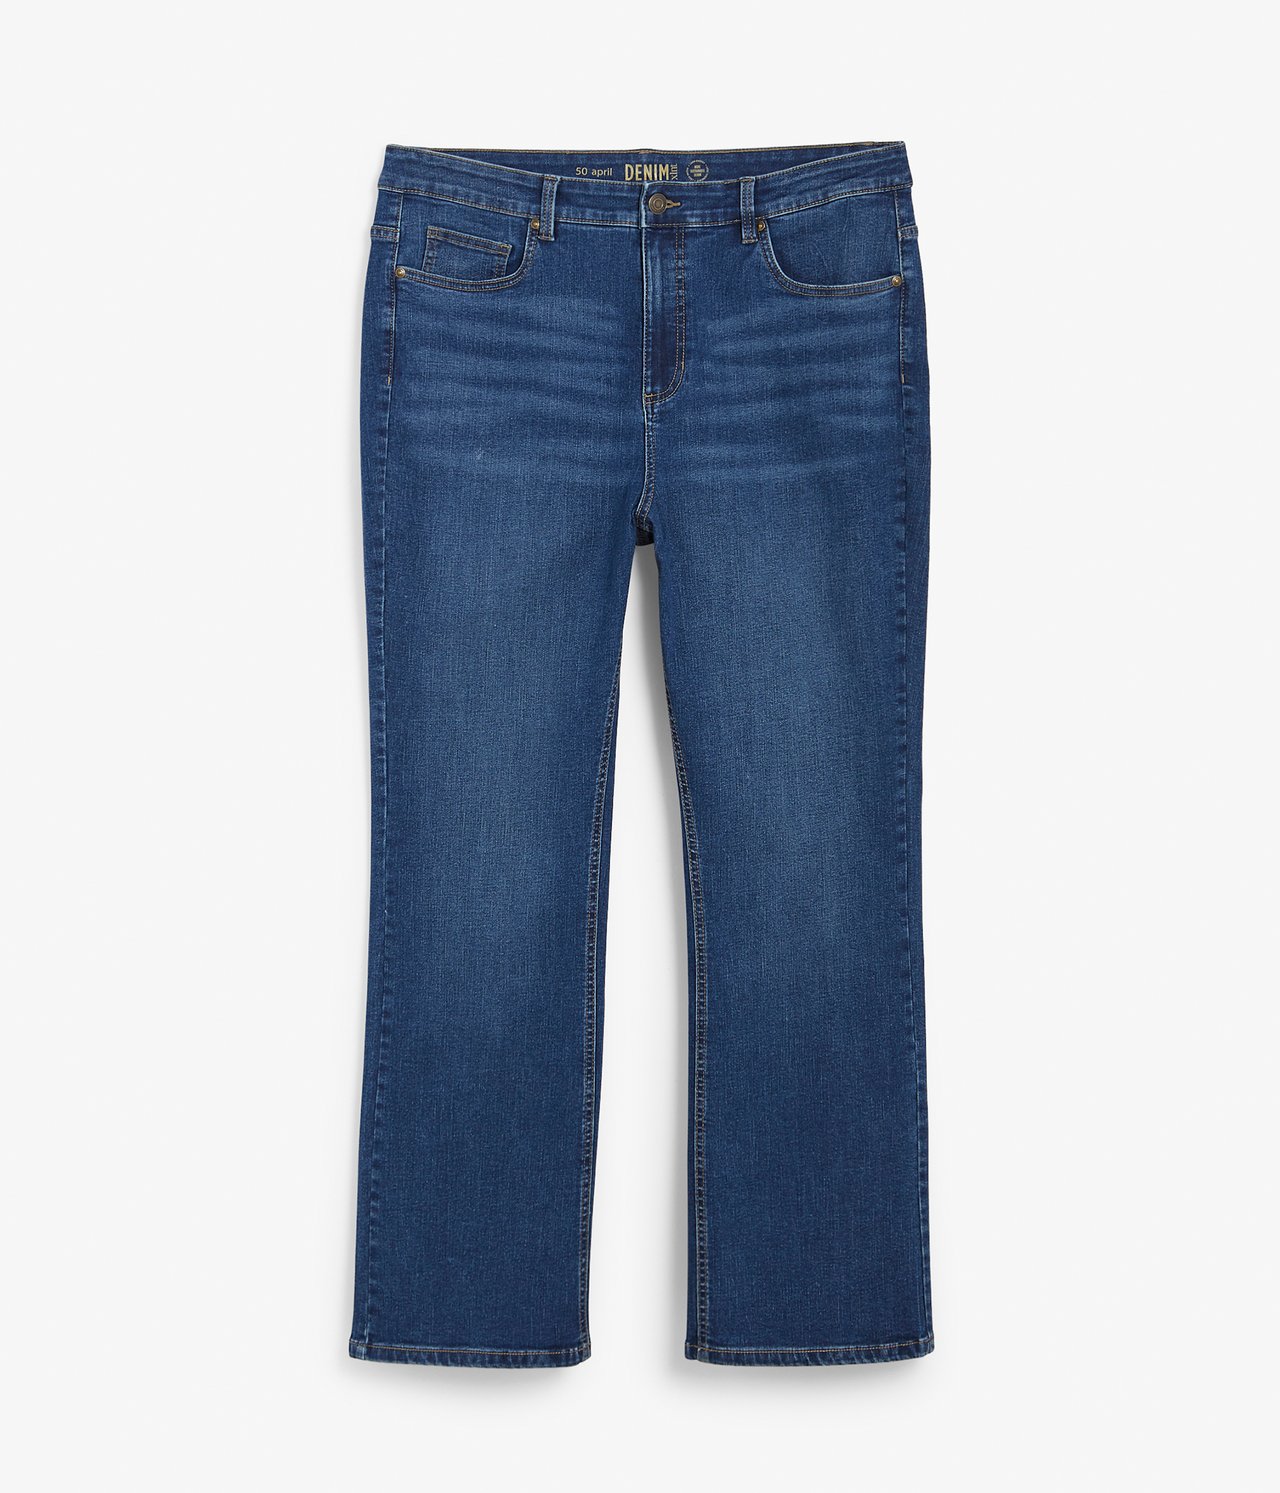 April bootcut jeans - Denimi - 6